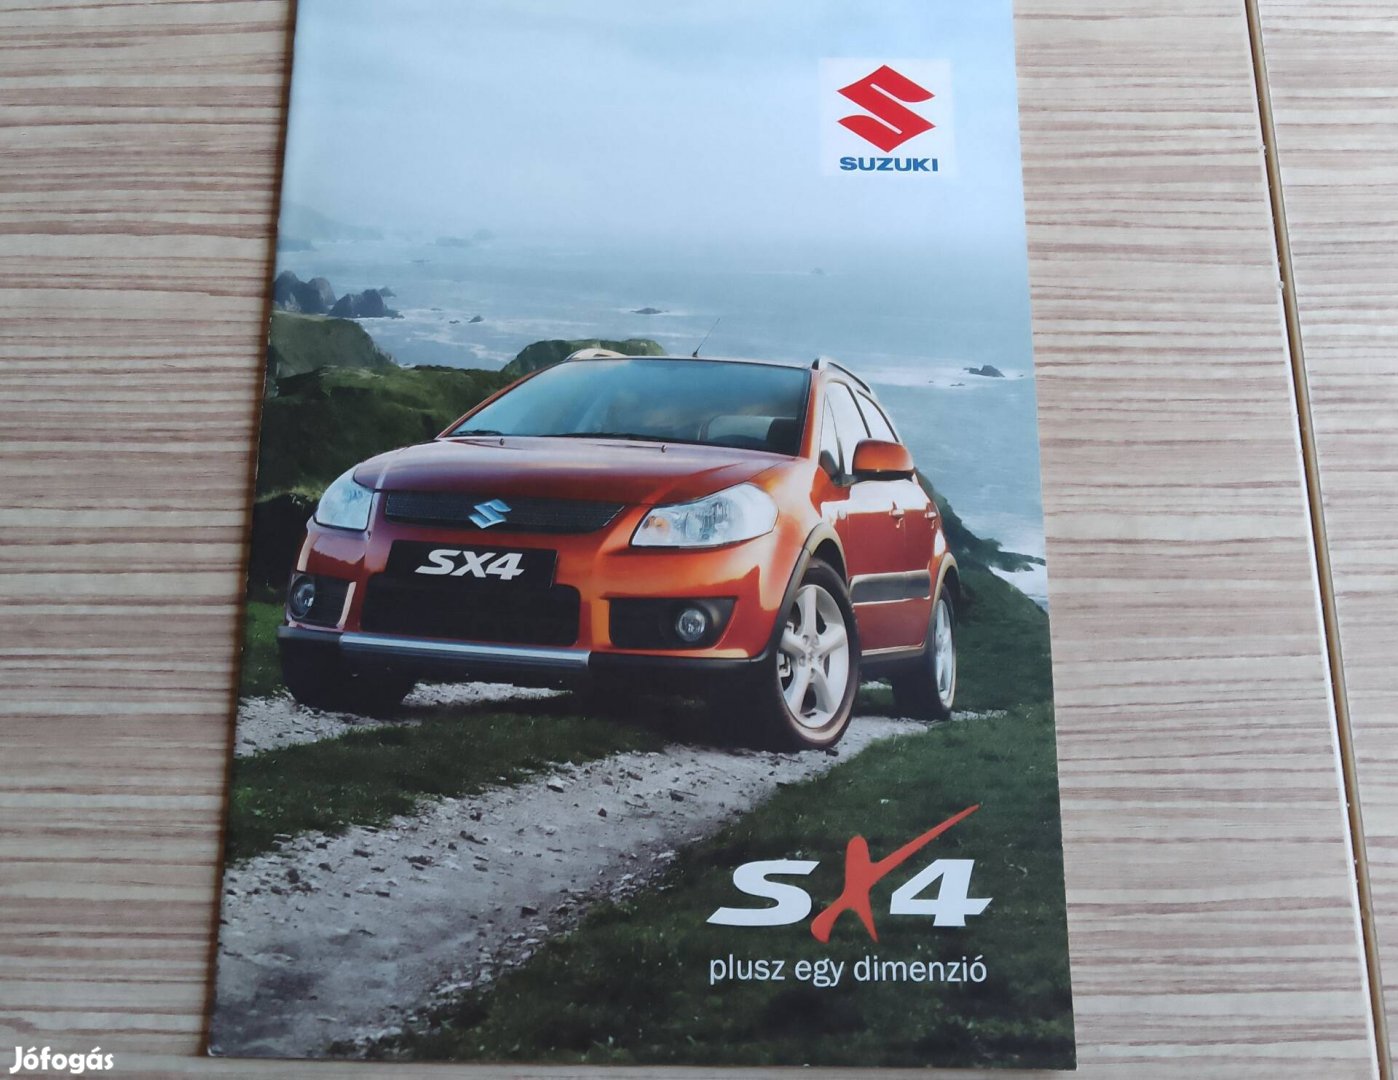 Suzuki SX4 magyar nyelvű prospektus, katalógus.